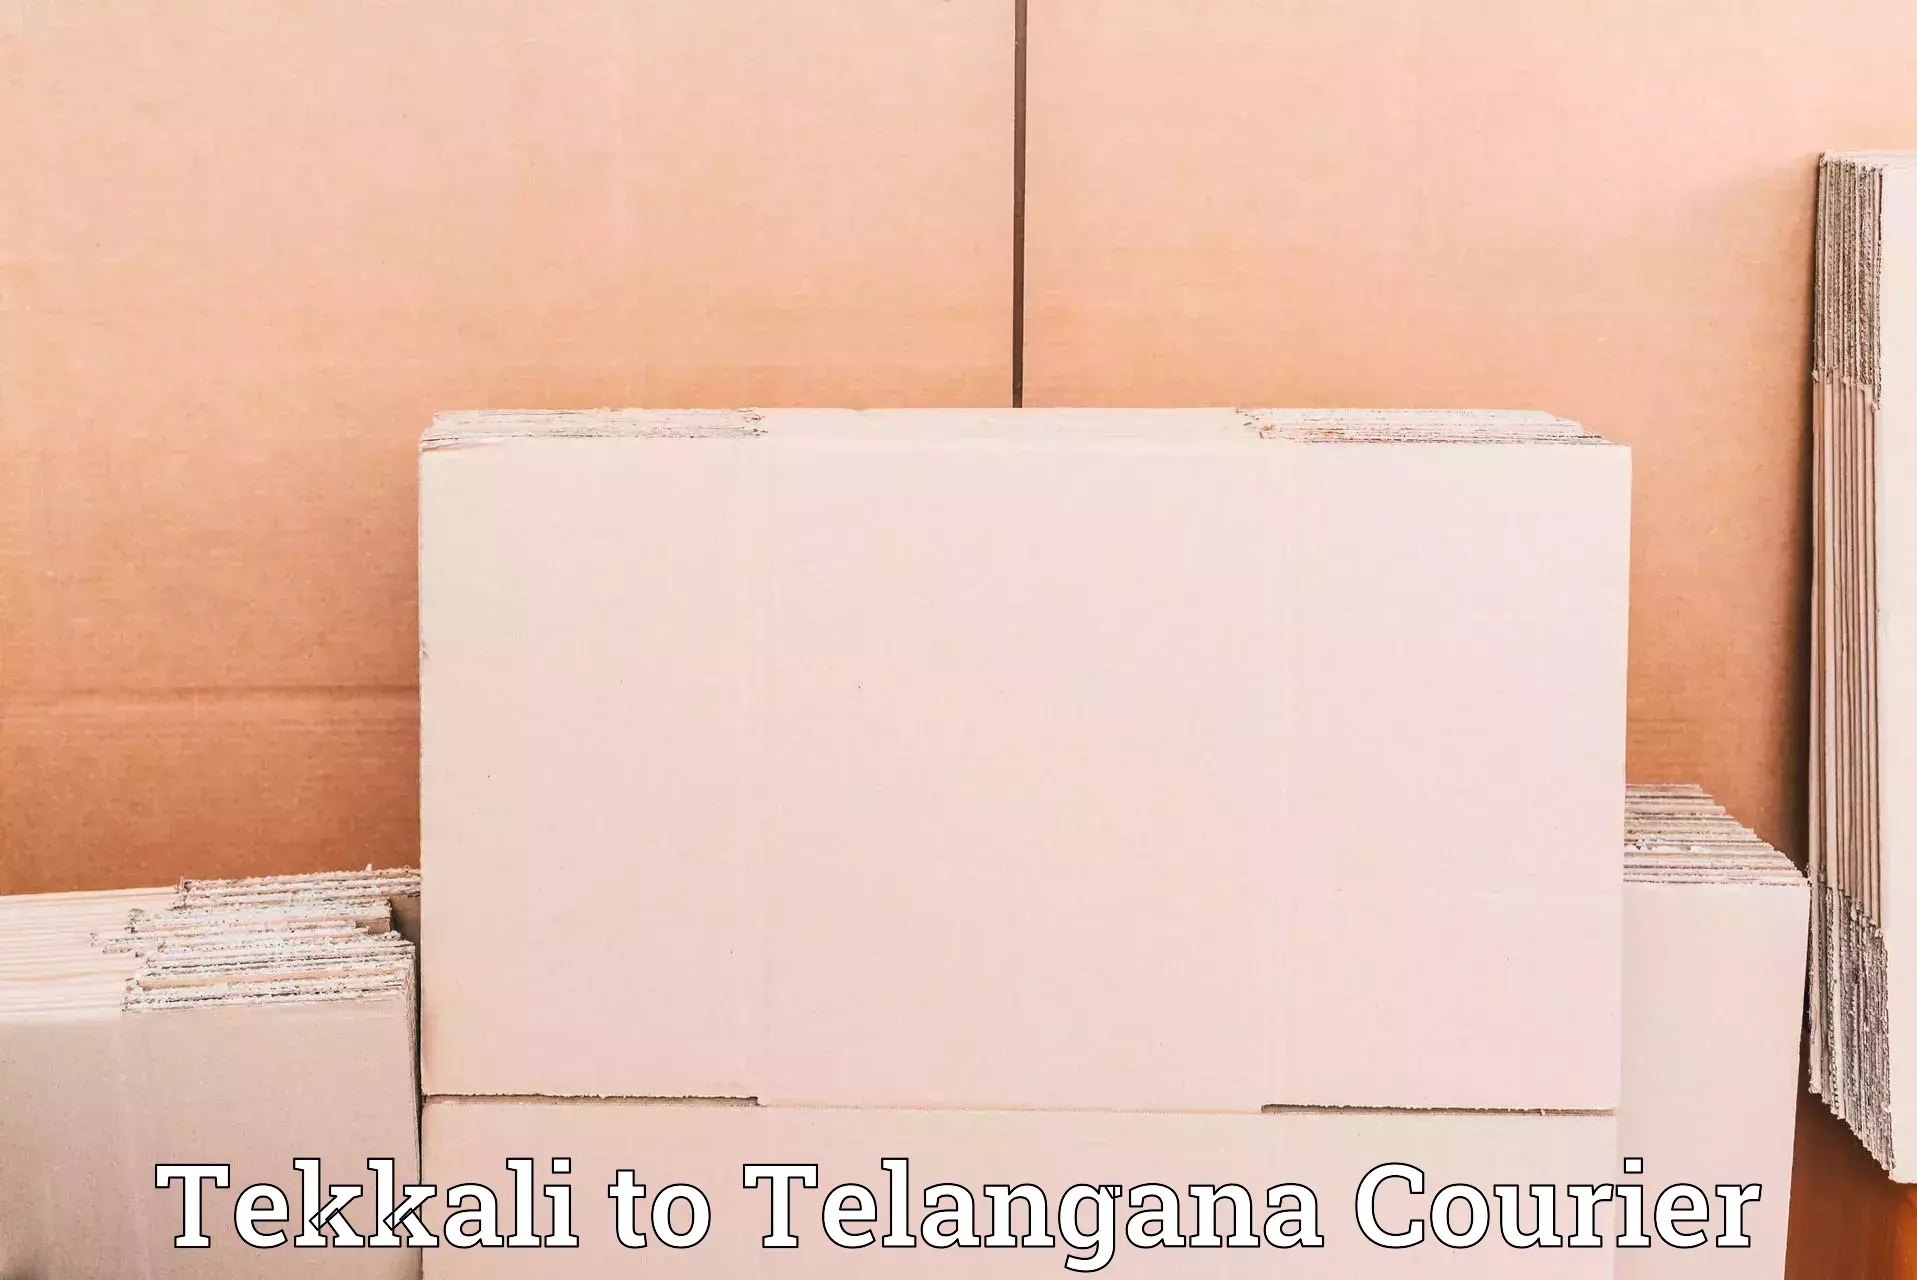 Global freight services Tekkali to Nalgonda